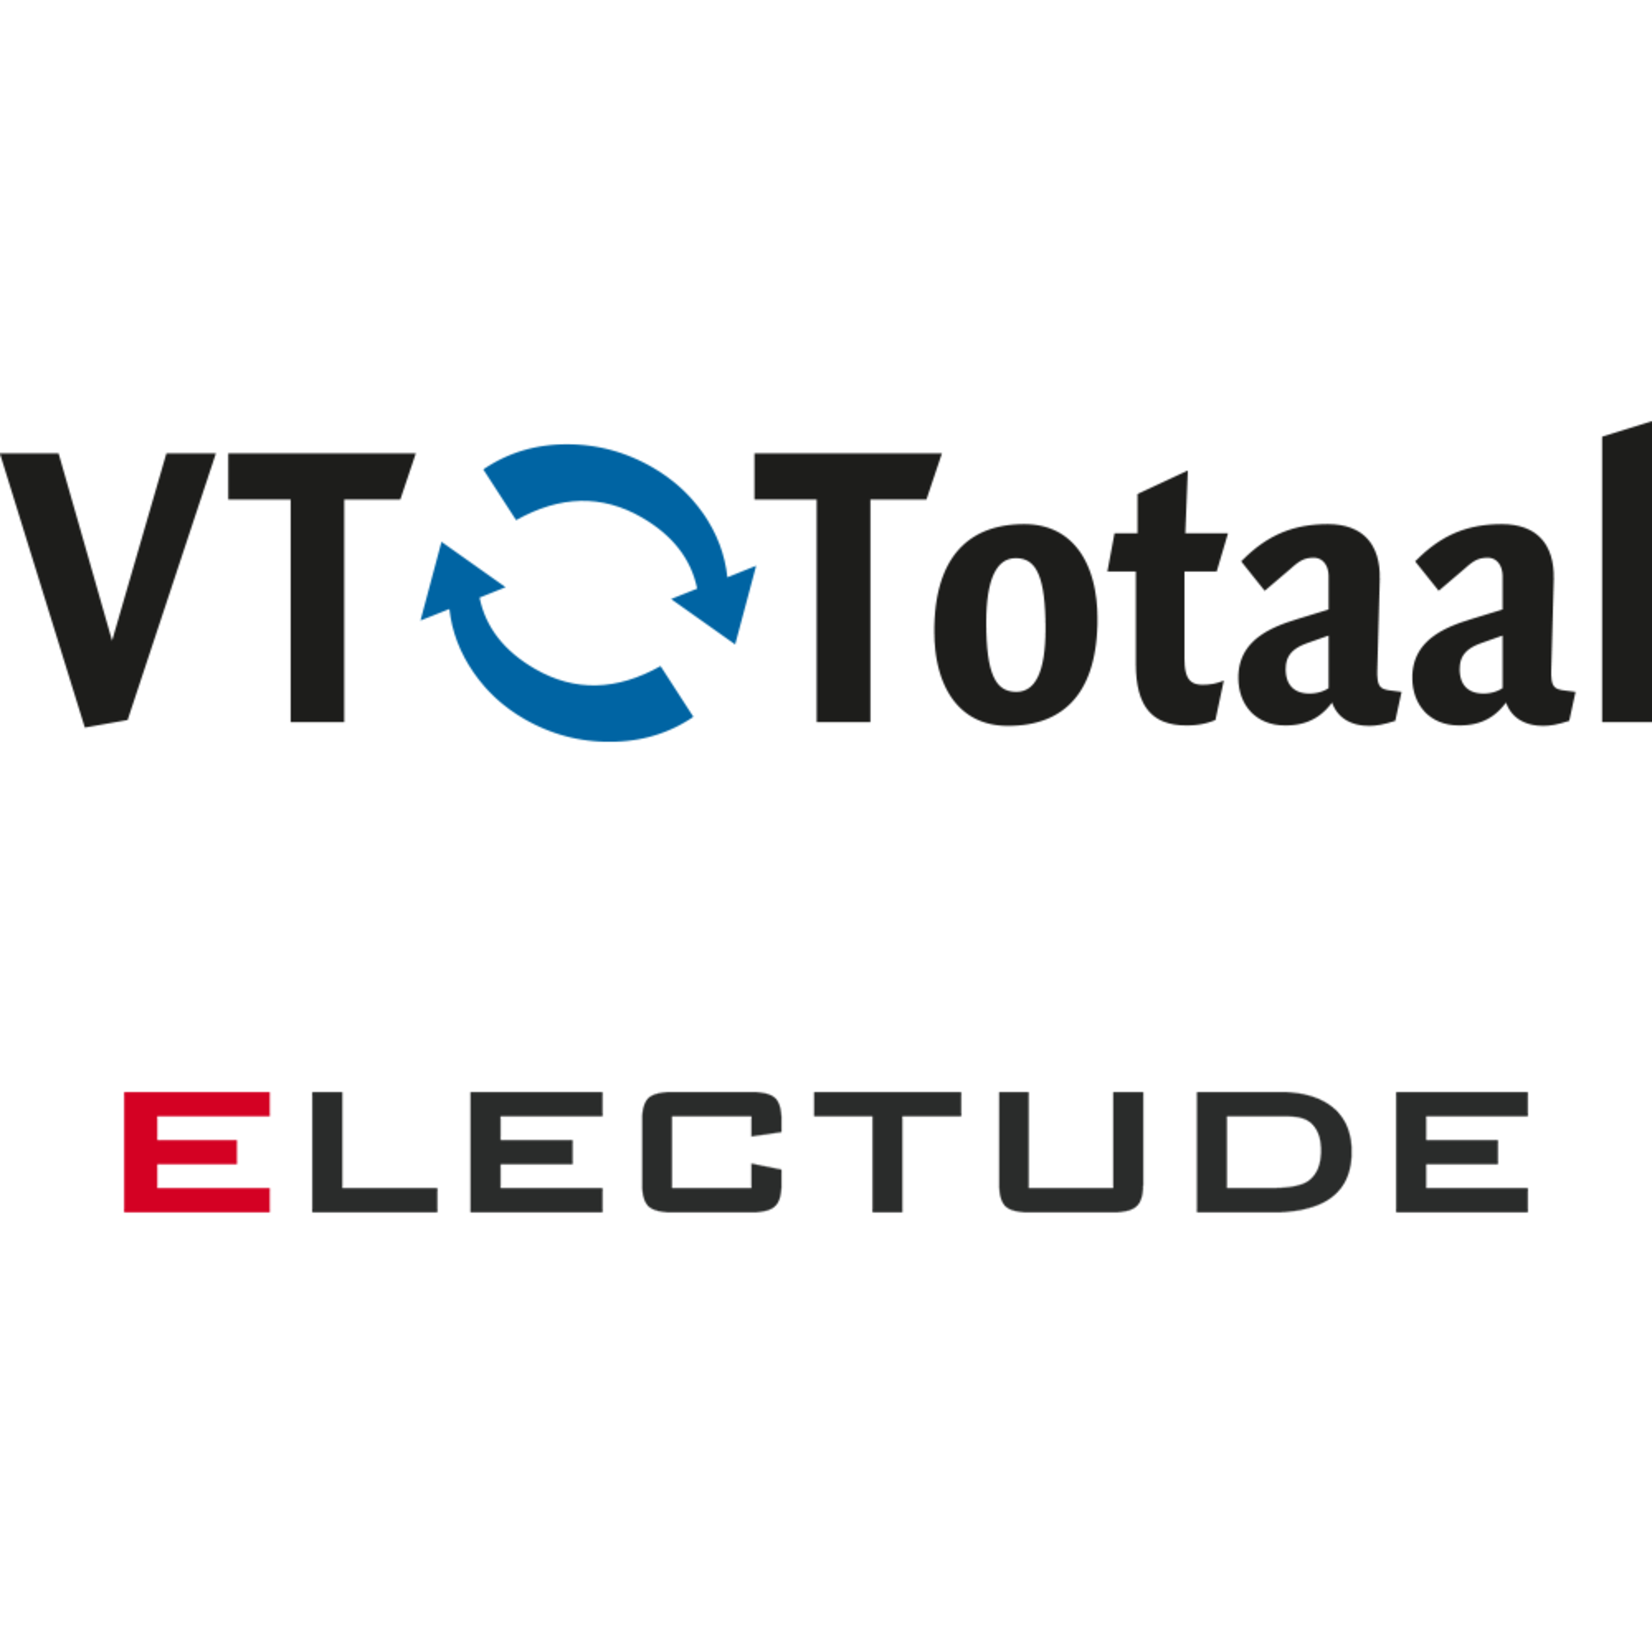 Licentie Electude - MK Autotechniek, VT-Totaal only 3 maanden